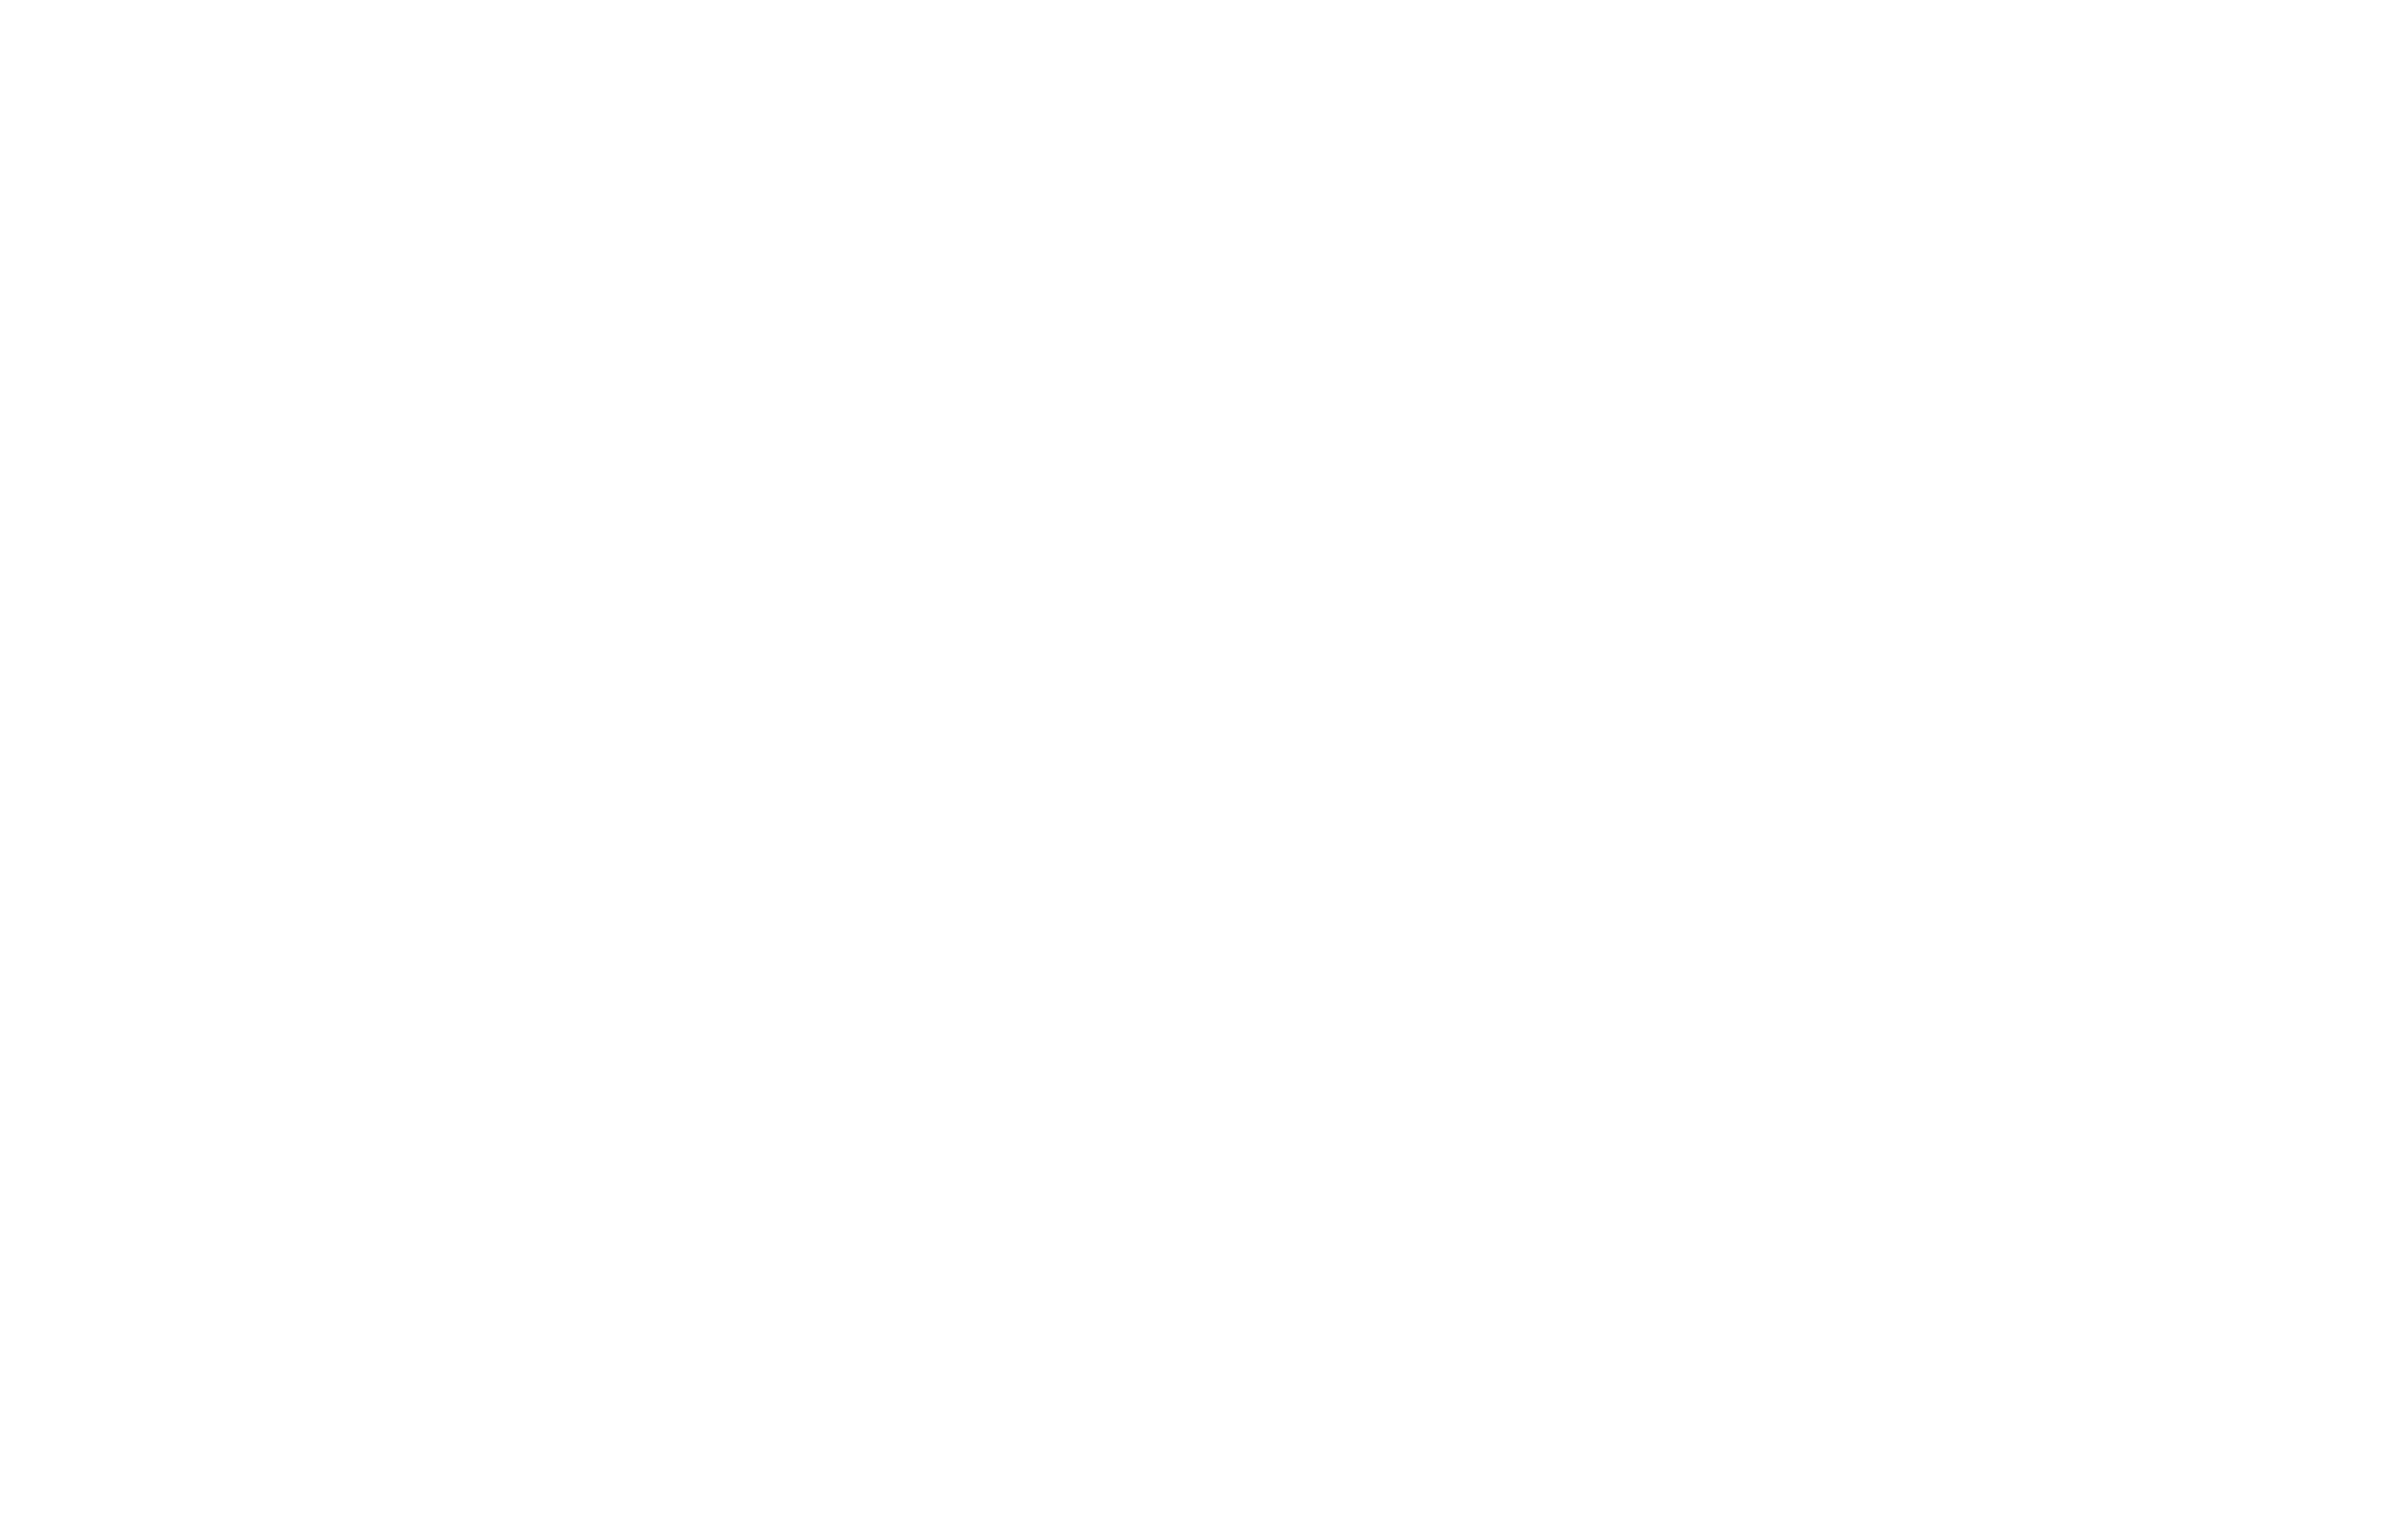 Port Arthur RV Park & Resort